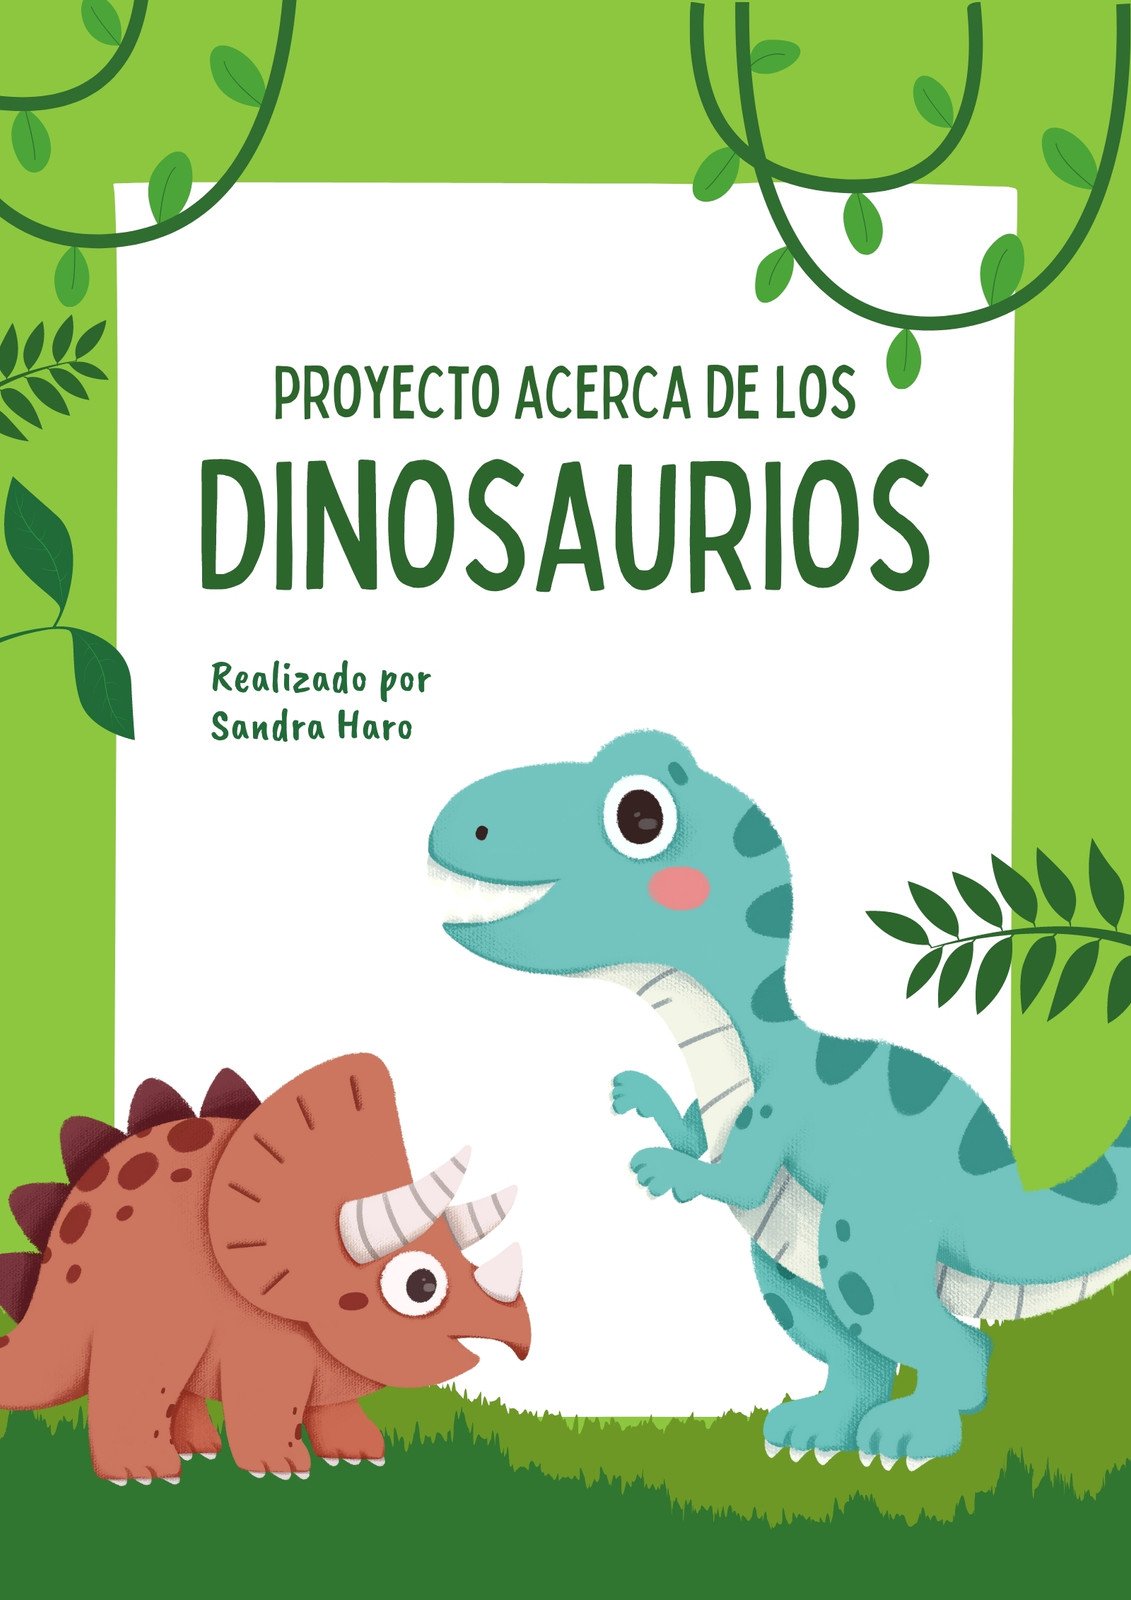 Plantillas de dinosaurios gratis y personalizables - Canva